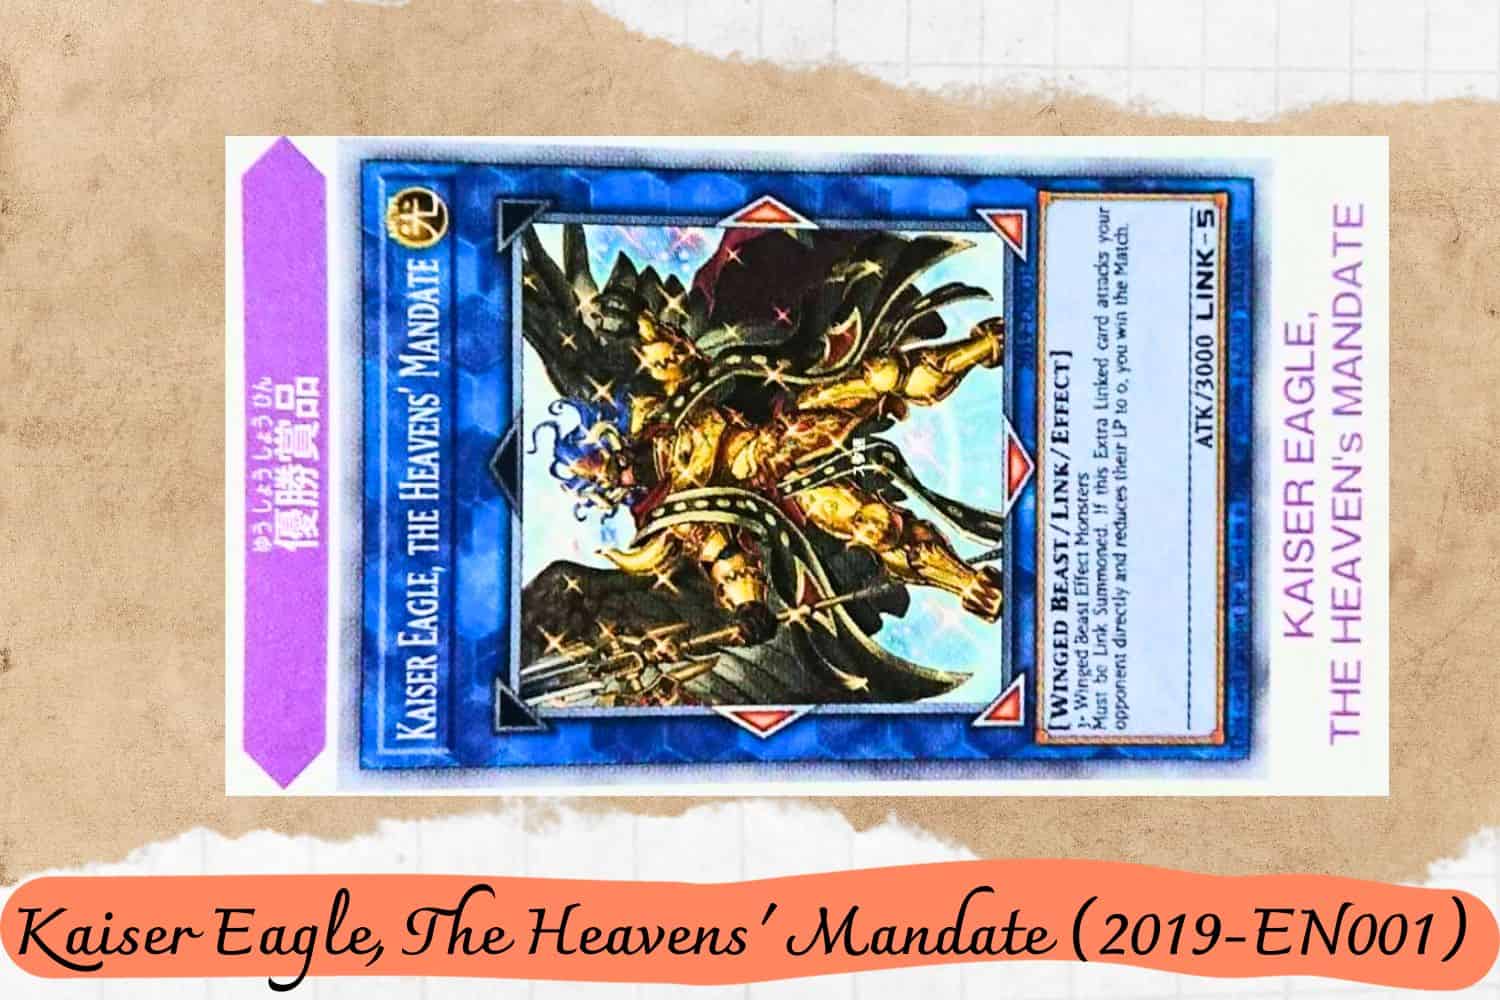 Kaiser Eagle, The Heavens' Mandate (2019-EN001)